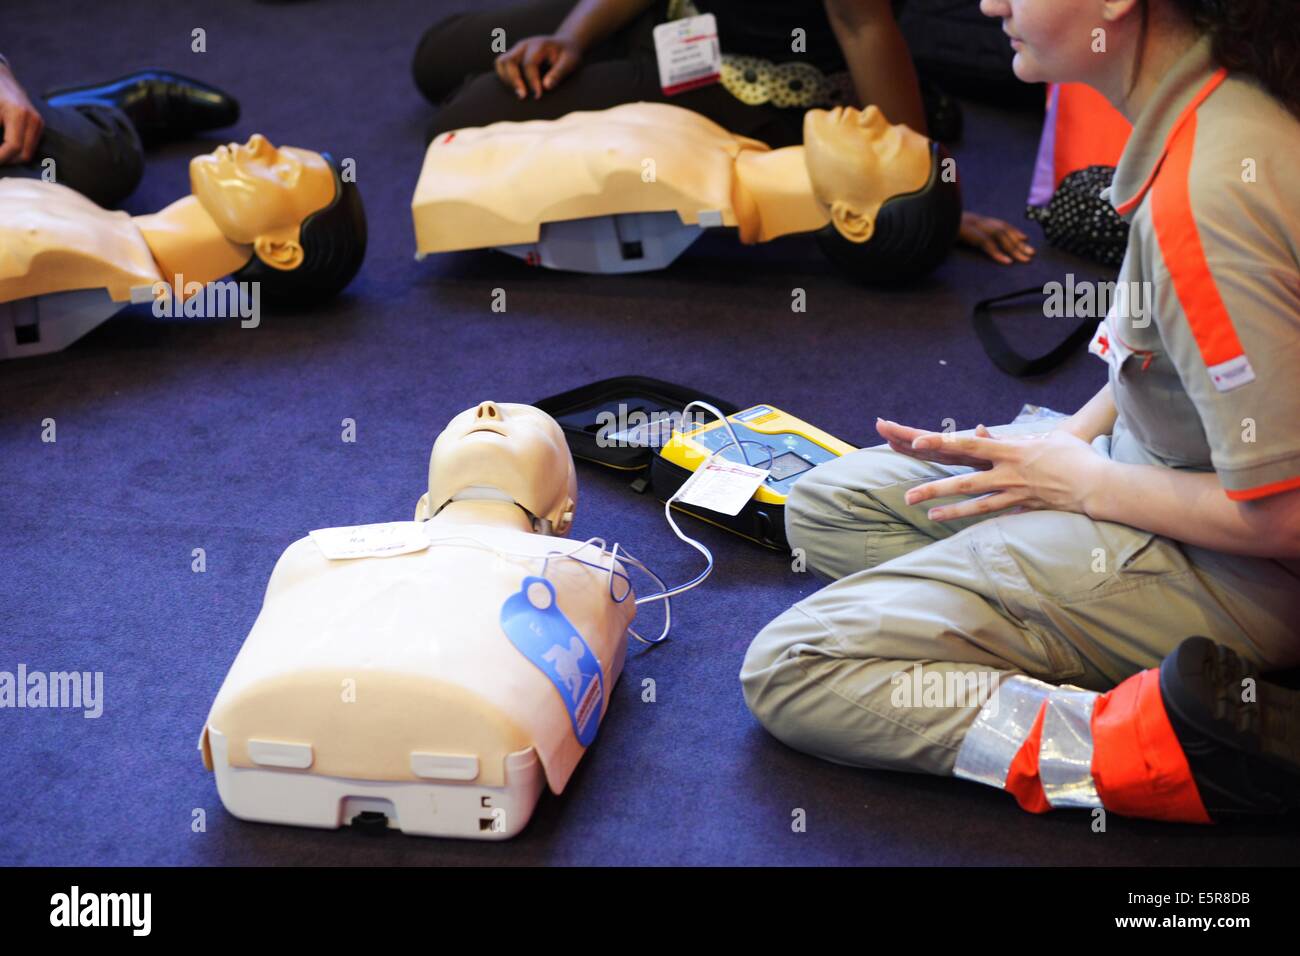 Cours de formation en premiers soins donnée par la Croix Rouge (Croix Rouge  ) Paris, France ici, formateur montrant semi-automatiques Photo Stock -  Alamy